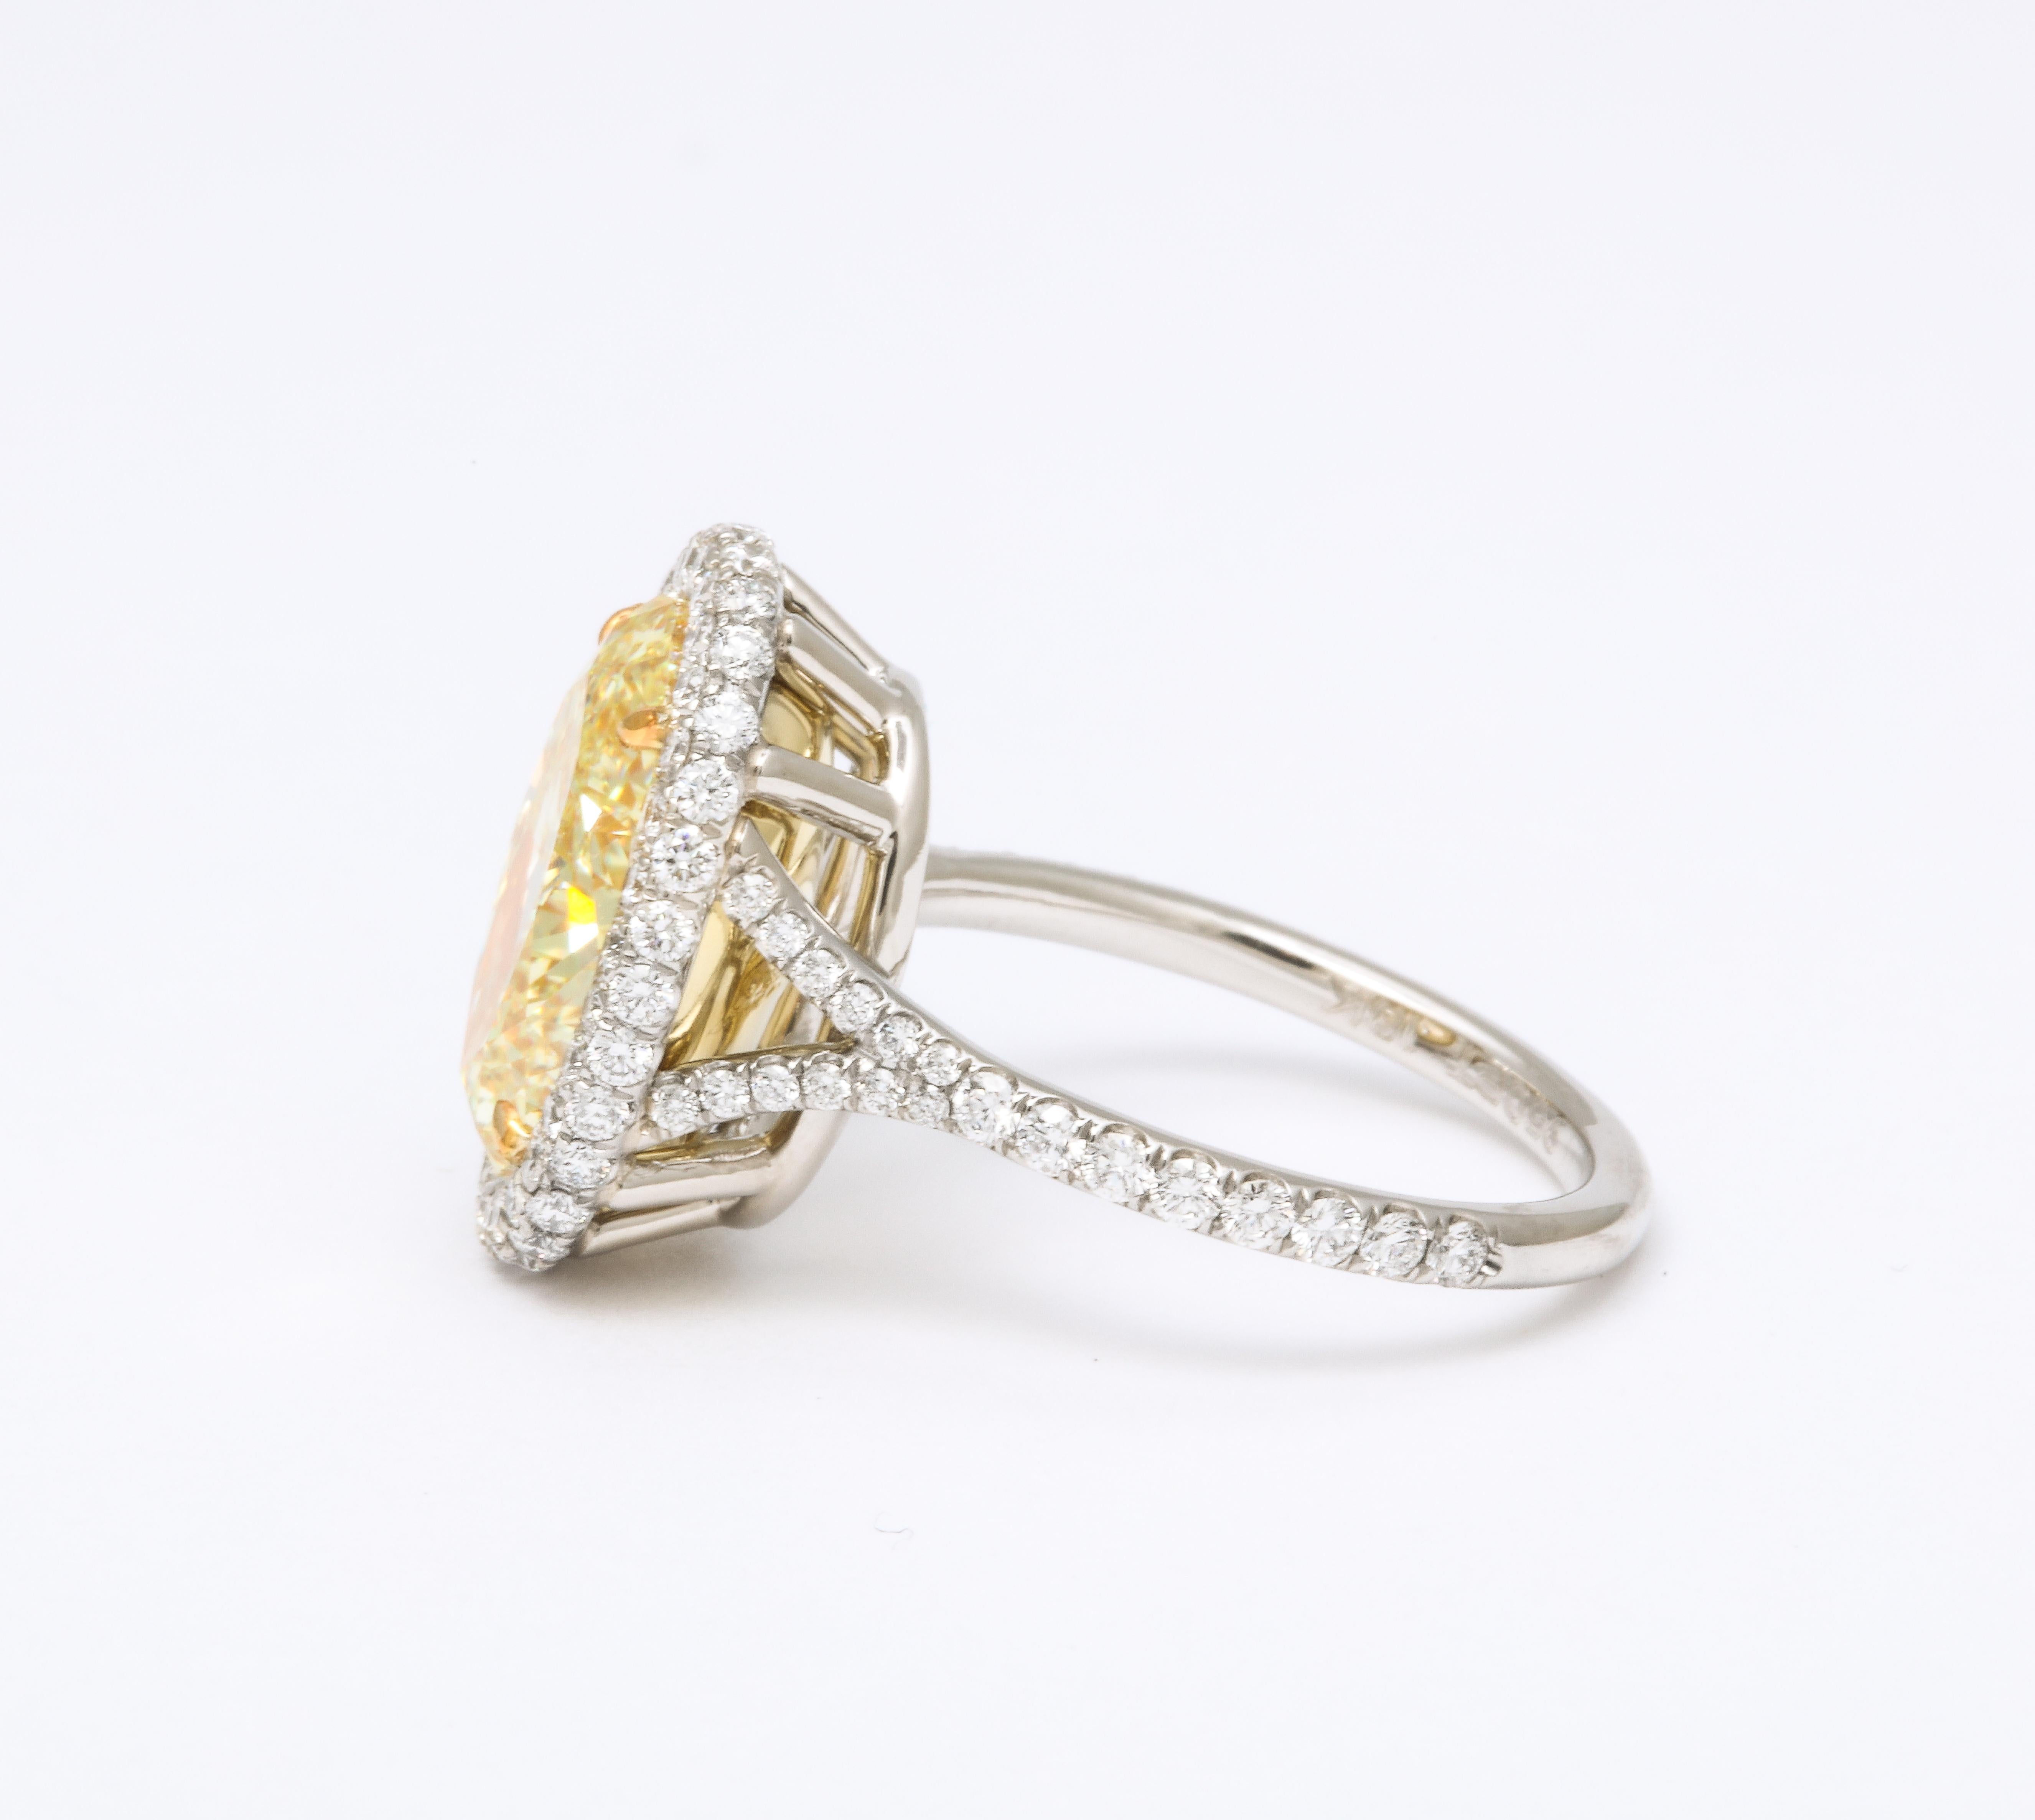 5 carat oval diamond ring